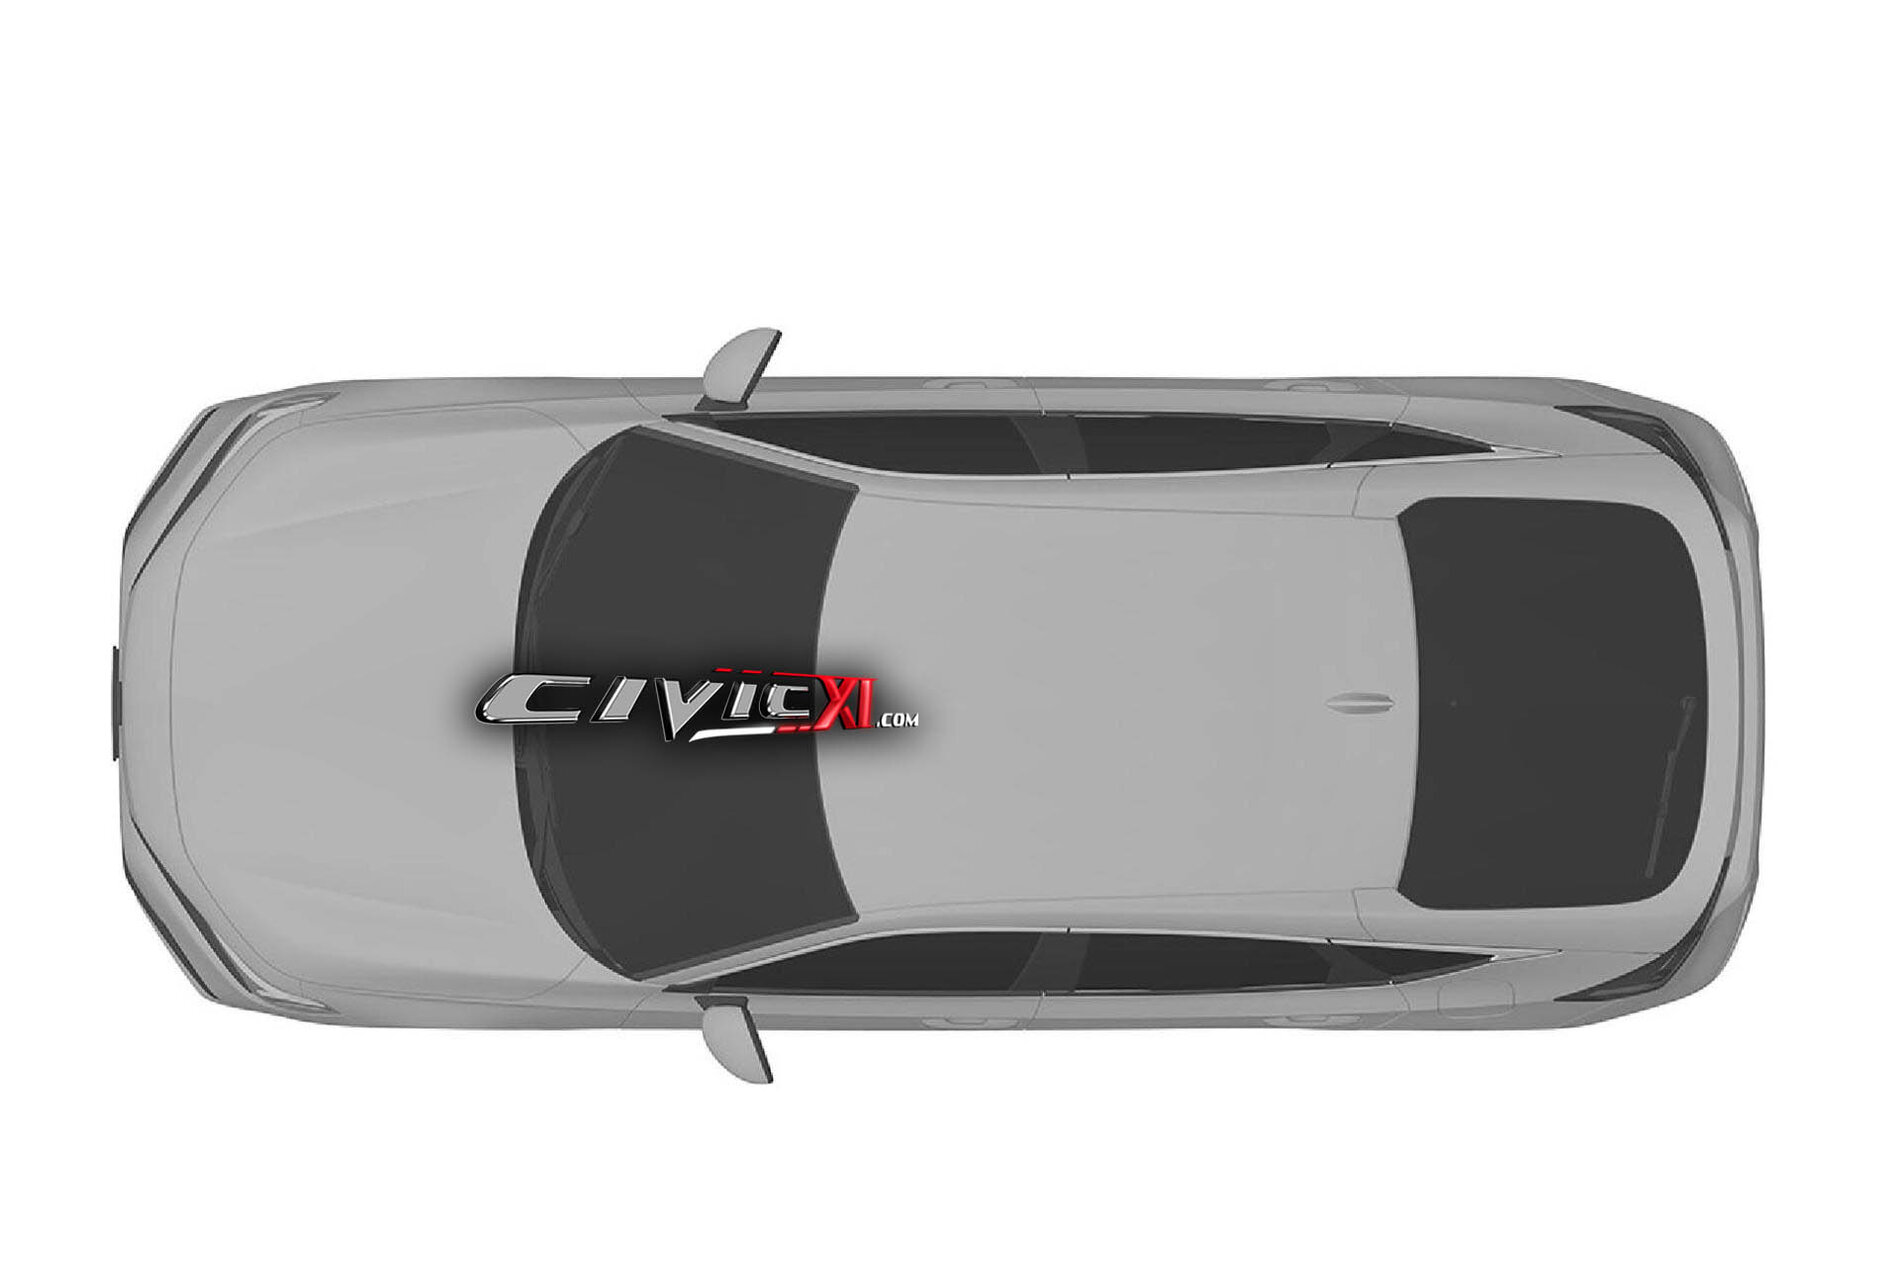 Honda Civic 2021_Patentes_Civicxi forum (7)